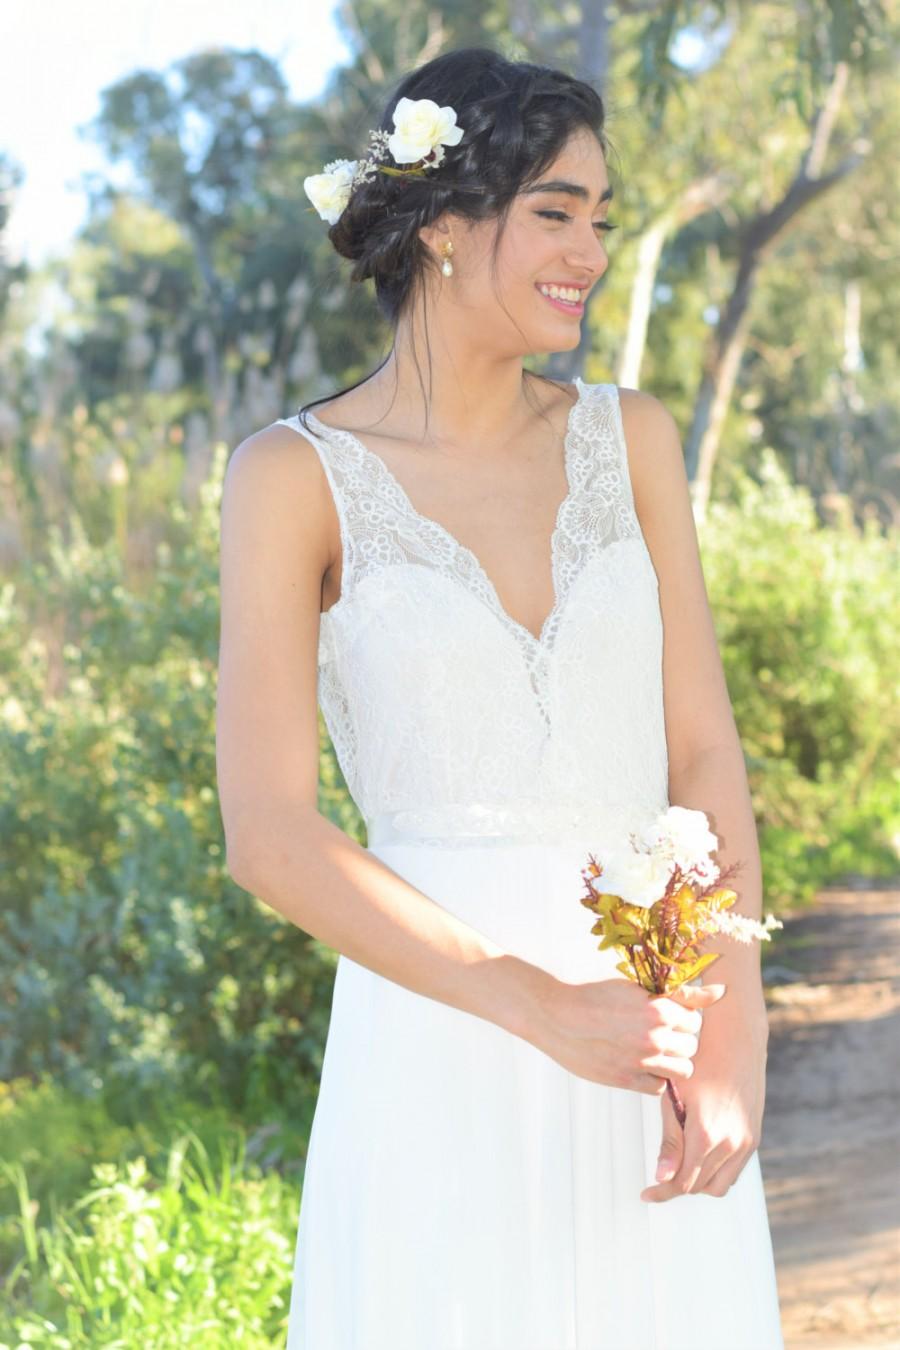 زفاف - Lily - Romantic wedding dress with lace top and chiffon skirt, boho wedding dress, backless  wedding dress, beach wedding dress